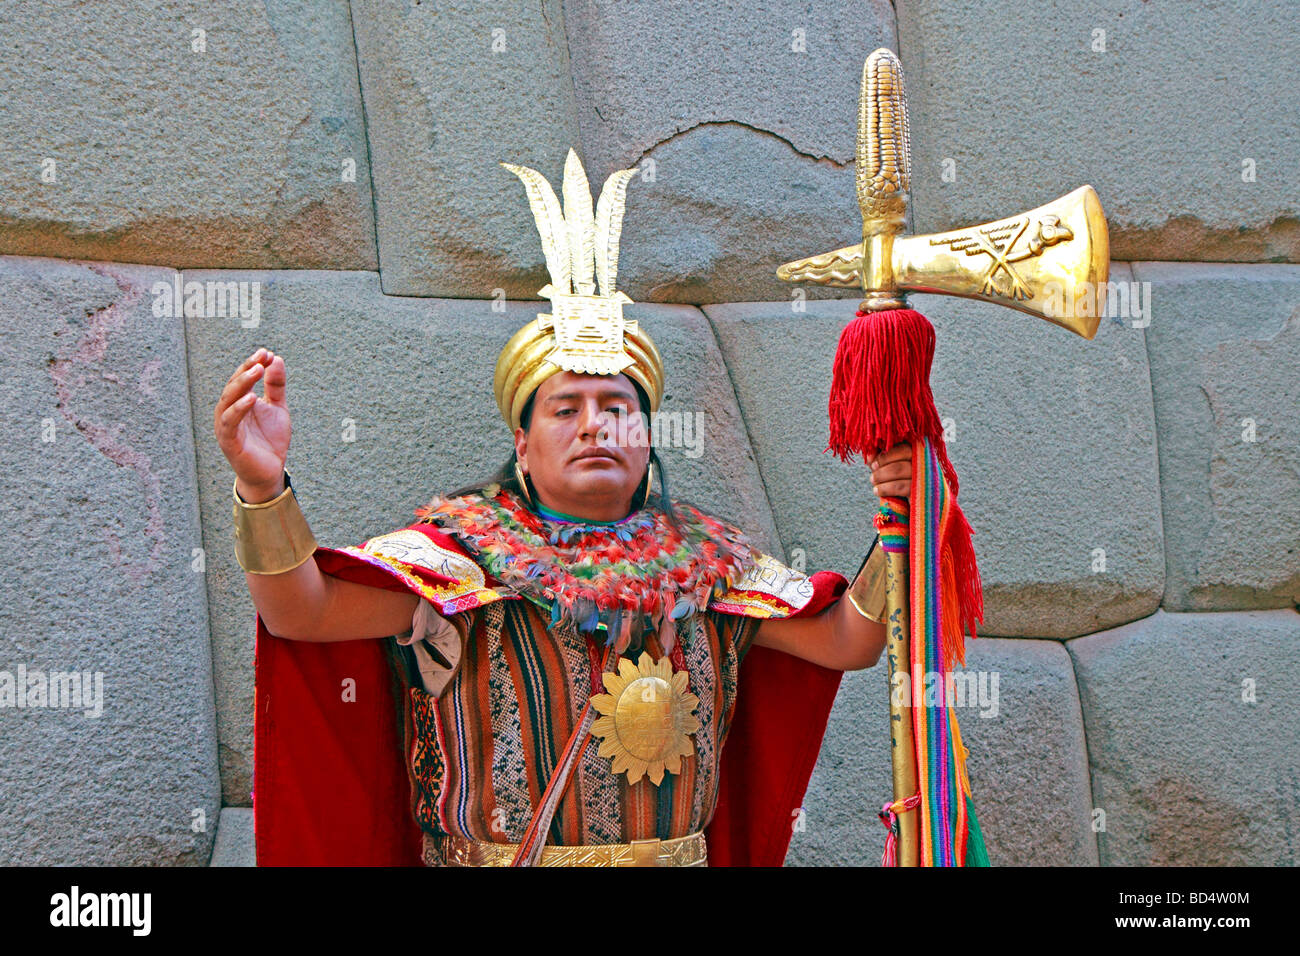 Performante en tant qu'acteur guerrier Inca, Calle Hatun Rumiyok, Cuzco, Pérou, Amérique du Sud Banque D'Images